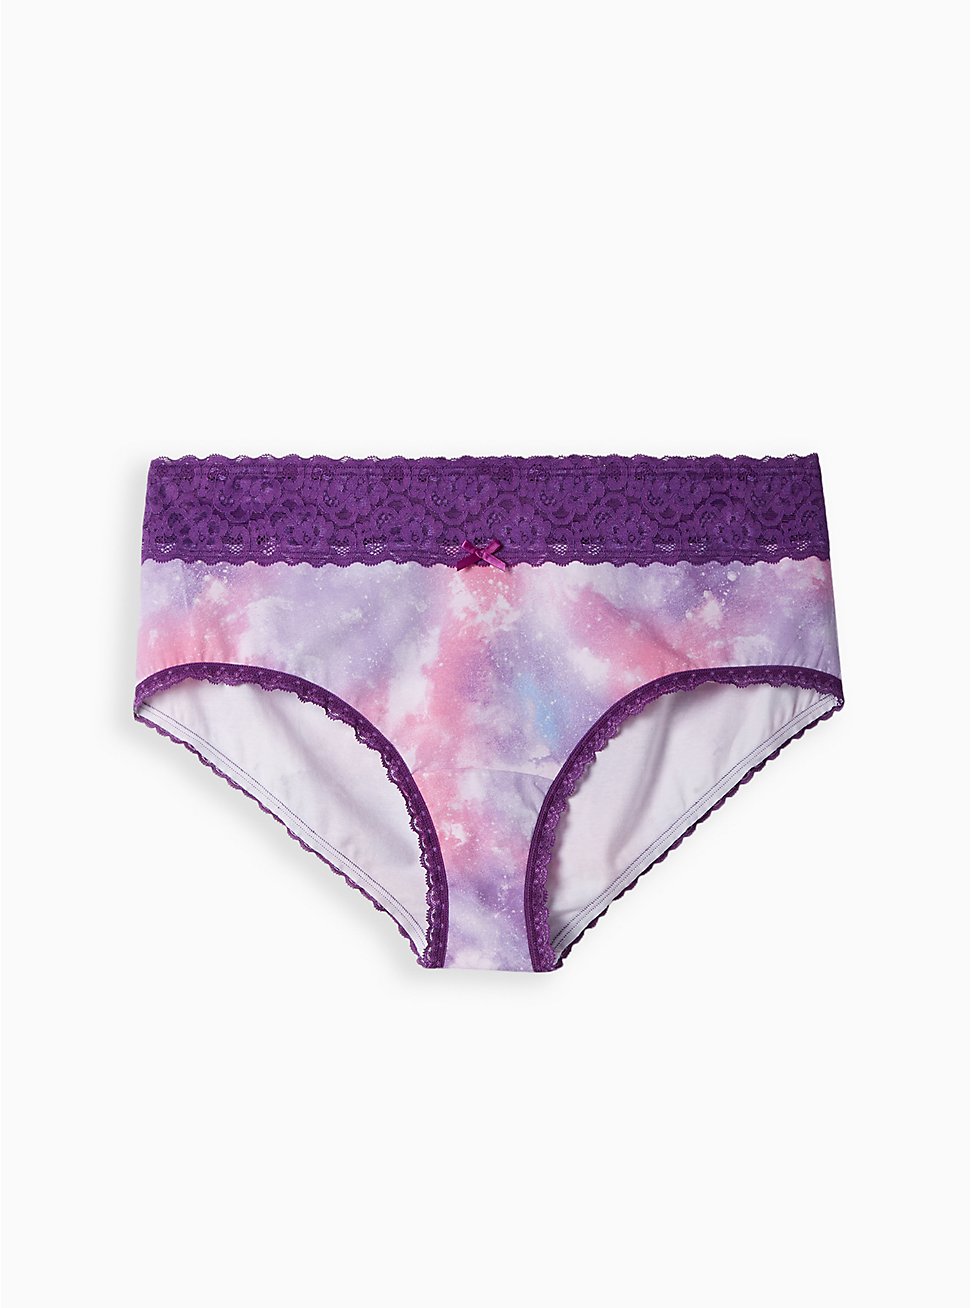 Plus Size Wide Lace Trim Cheeky Panty - Cotton Purple Tie Dye, MAGIC SKY PURPLE, hi-res